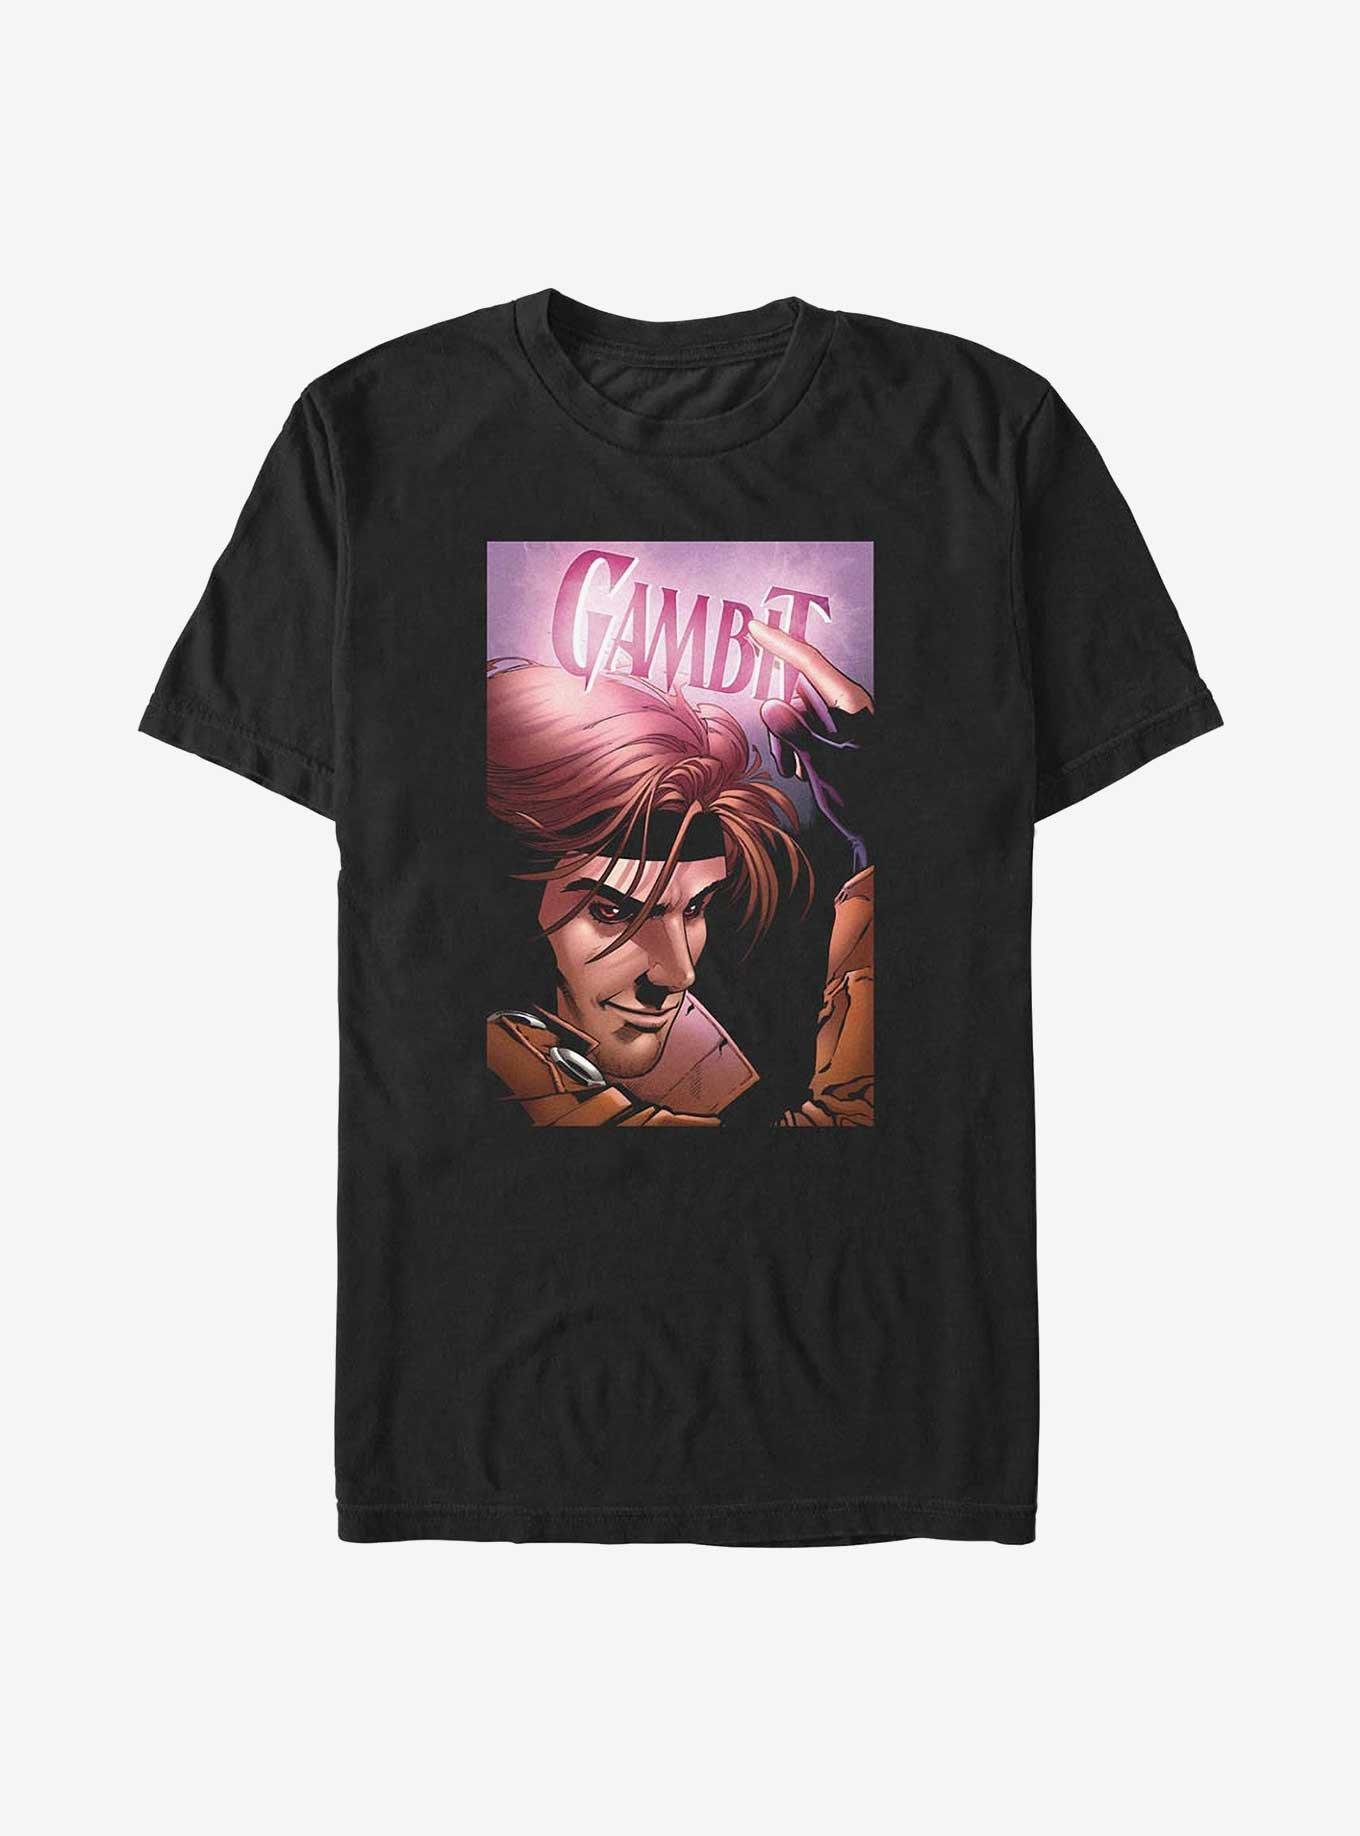 X-Men Gambit Poster Big & Tall T-Shirt, BLACK, hi-res